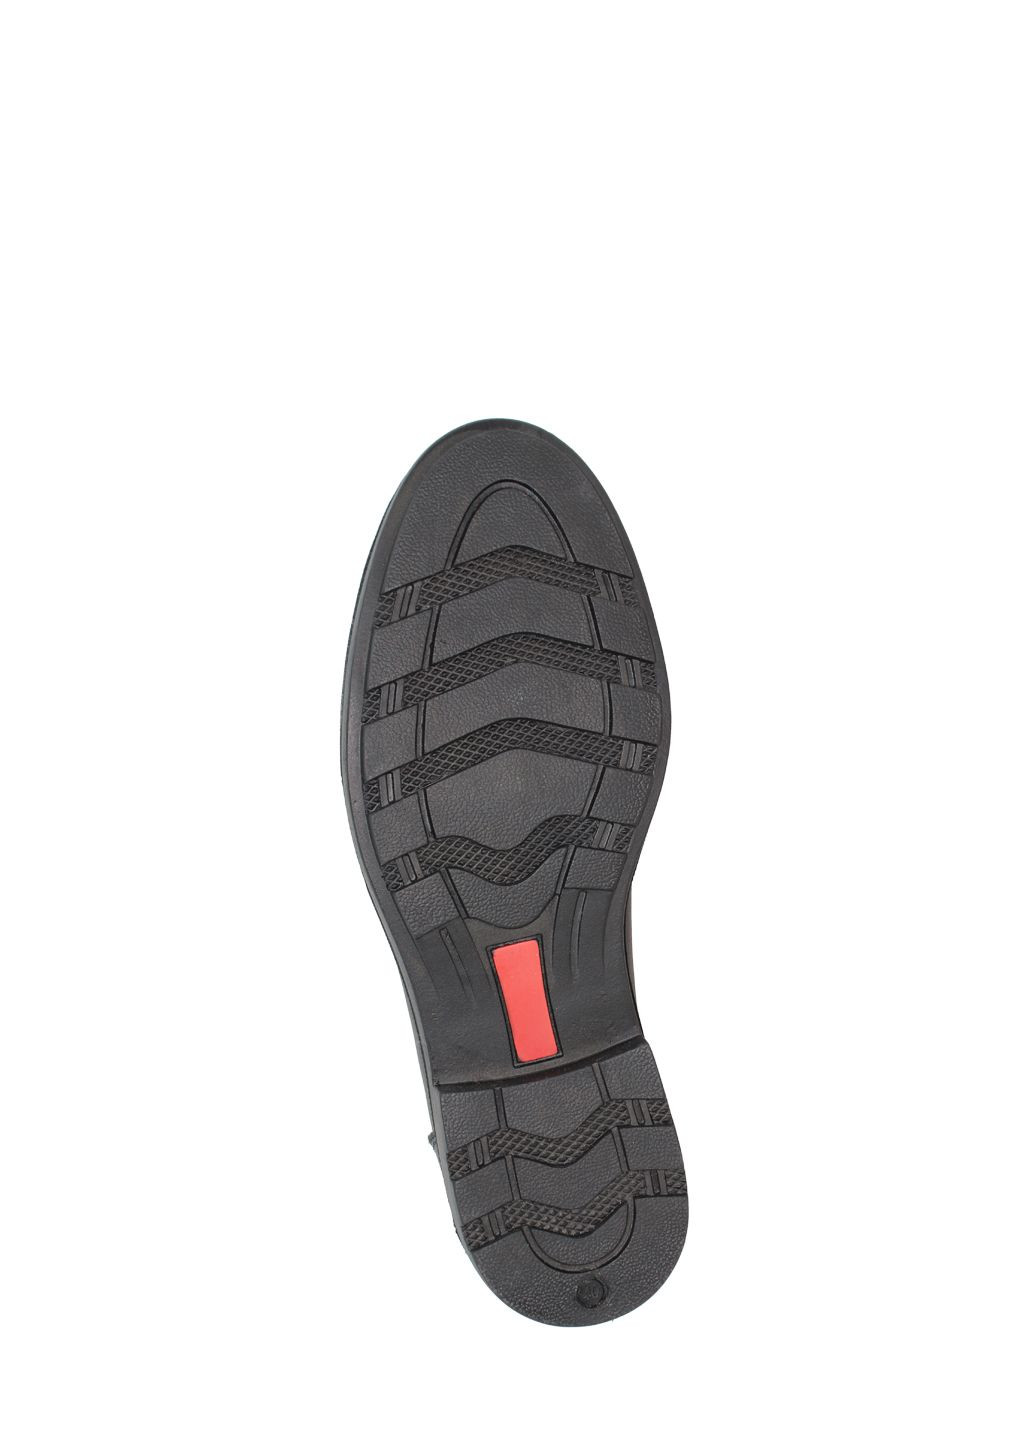 Черные туфли g1105.01 черный Goover